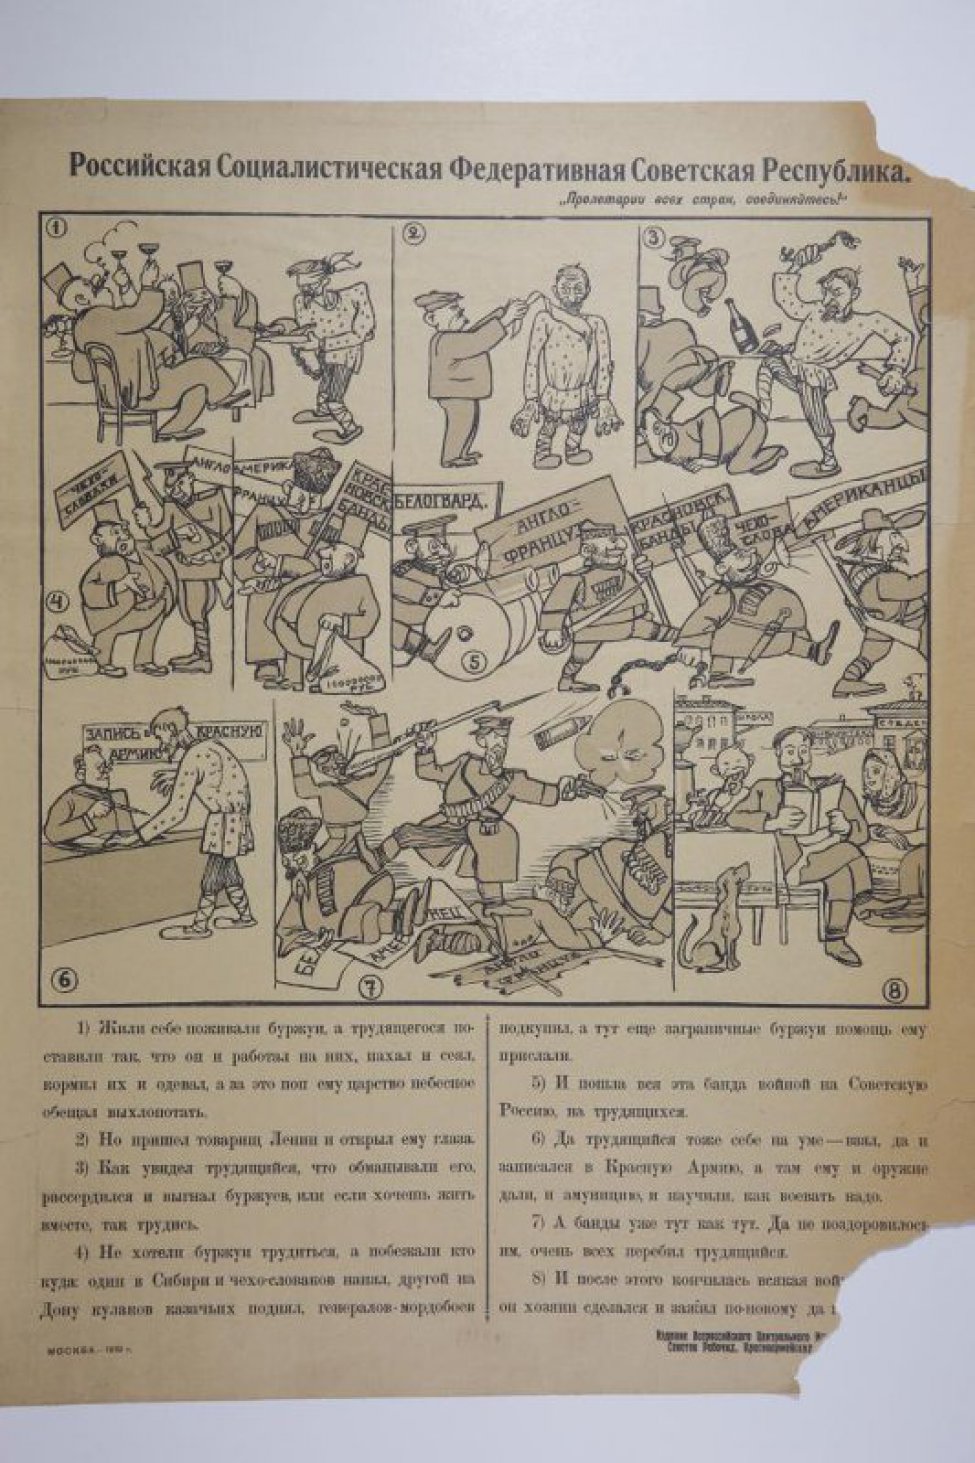 Изображено несколько рисунков с эпизодами борьбы трудящихся революции 1917г. Под рисунком текст: " Жили себе поживали... да похорошему". На верху справа лозунг:Пролетарии всех стран соединяйтесь!.